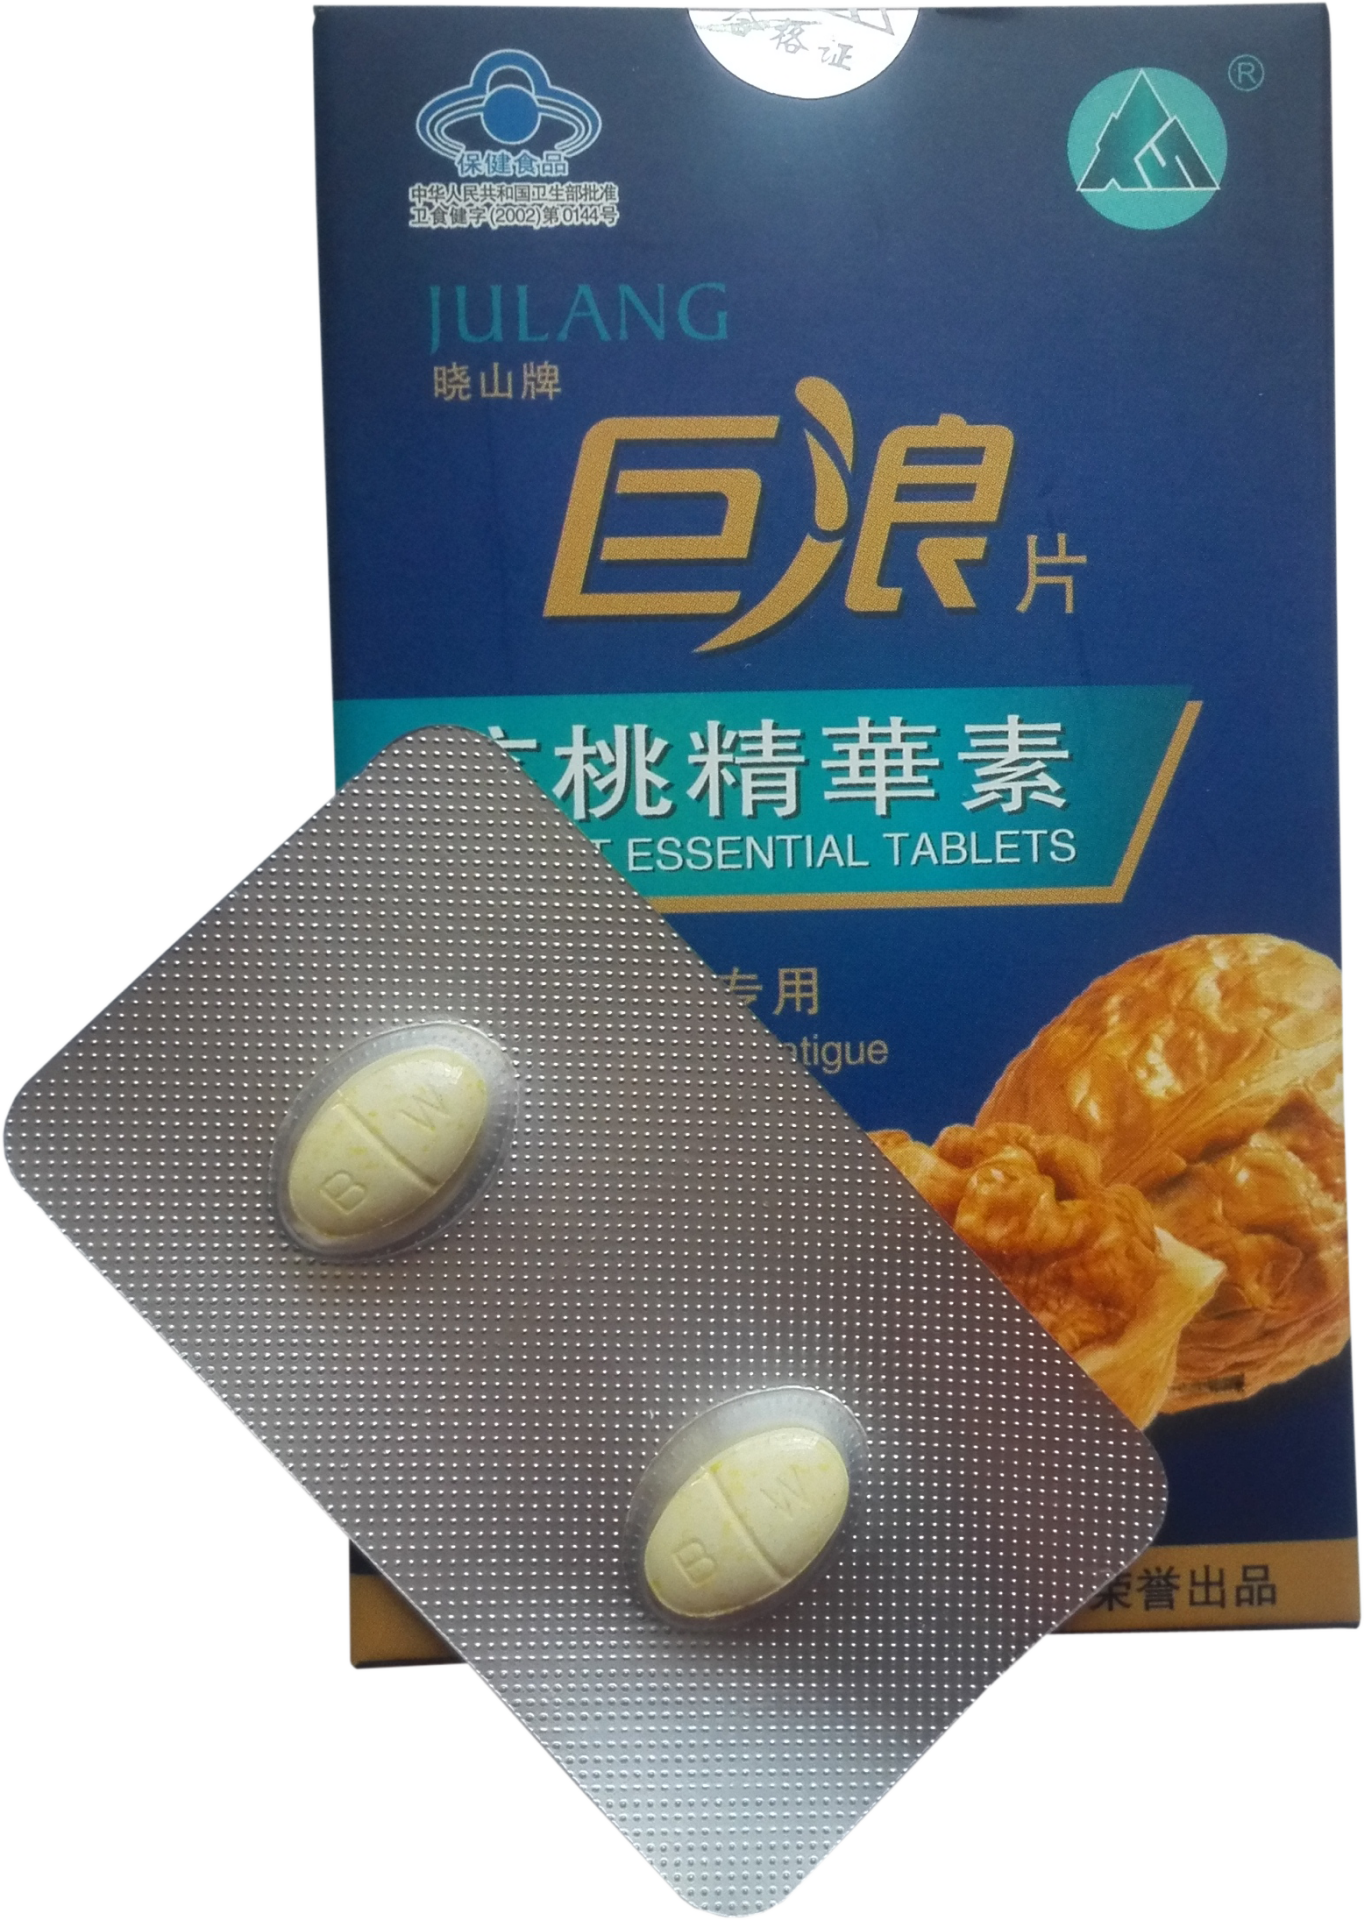 Таблетки "Сыворотка грецкого ореха" - специальный препарат, тонизирующий почки и поддерживающий мужское здоровье